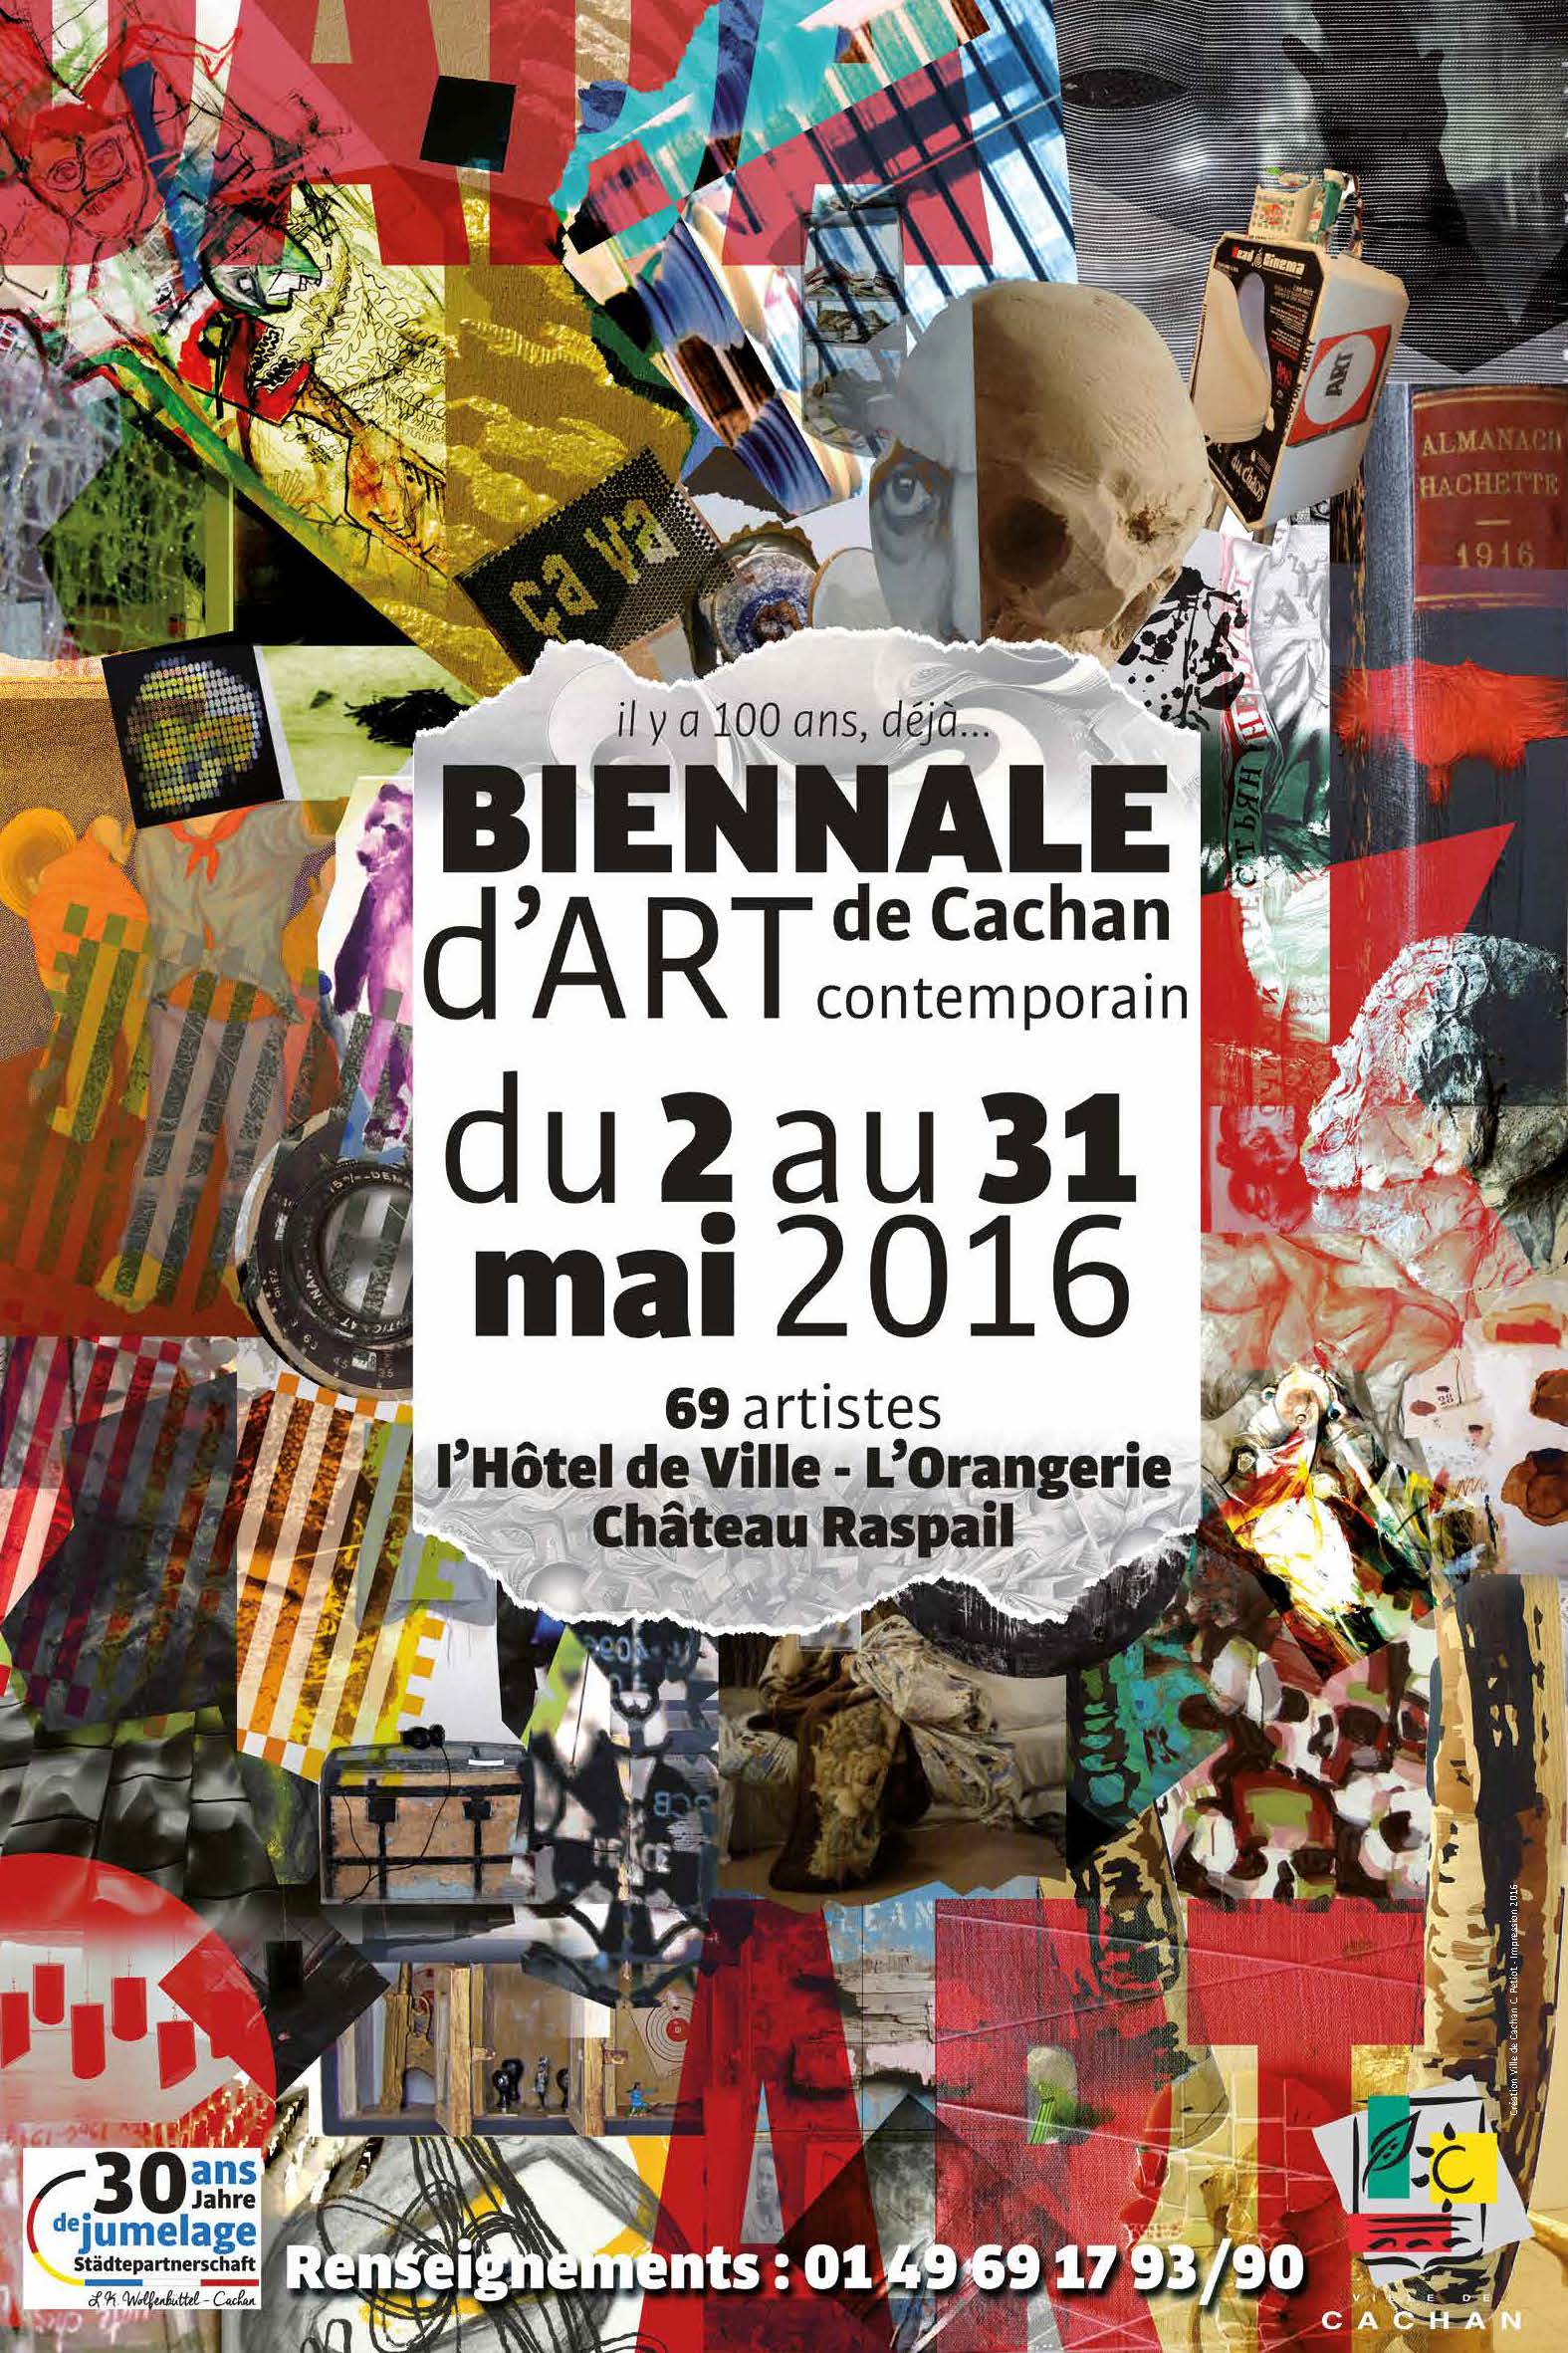 Biennale d'art contemporain 2016